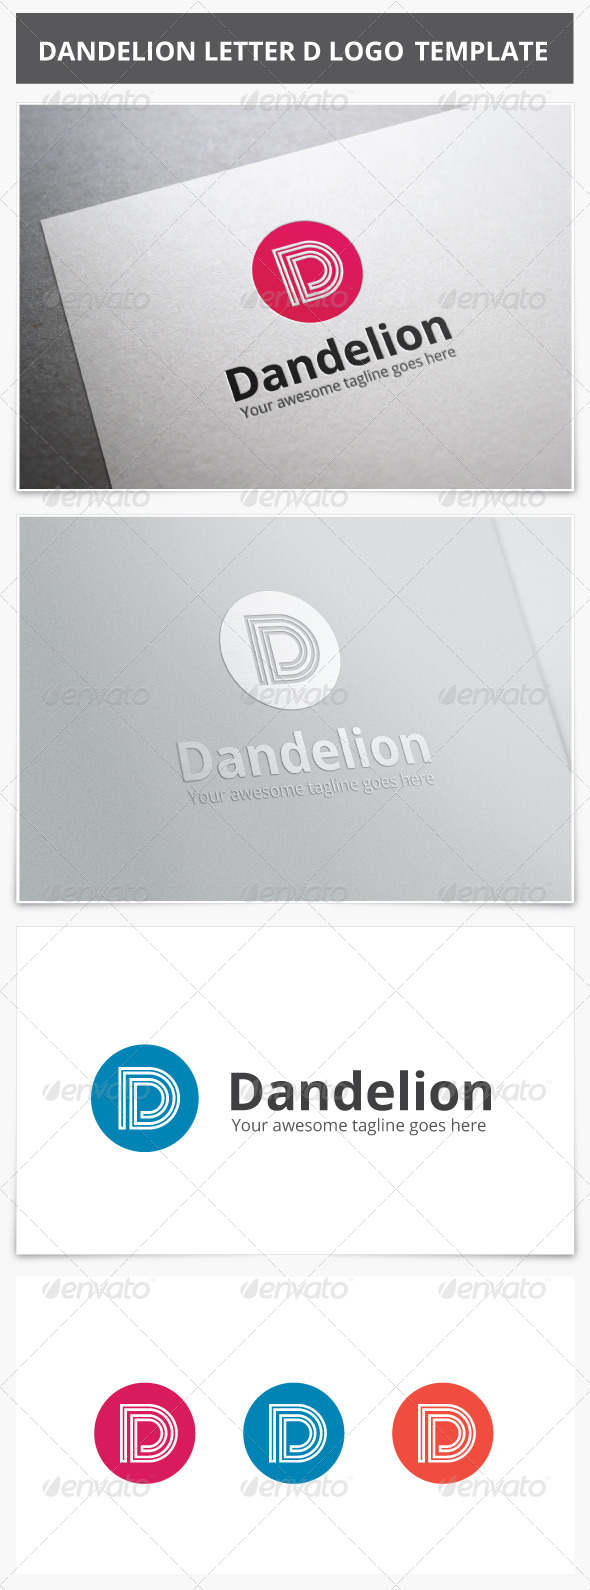 Dandelion Letter D Logo